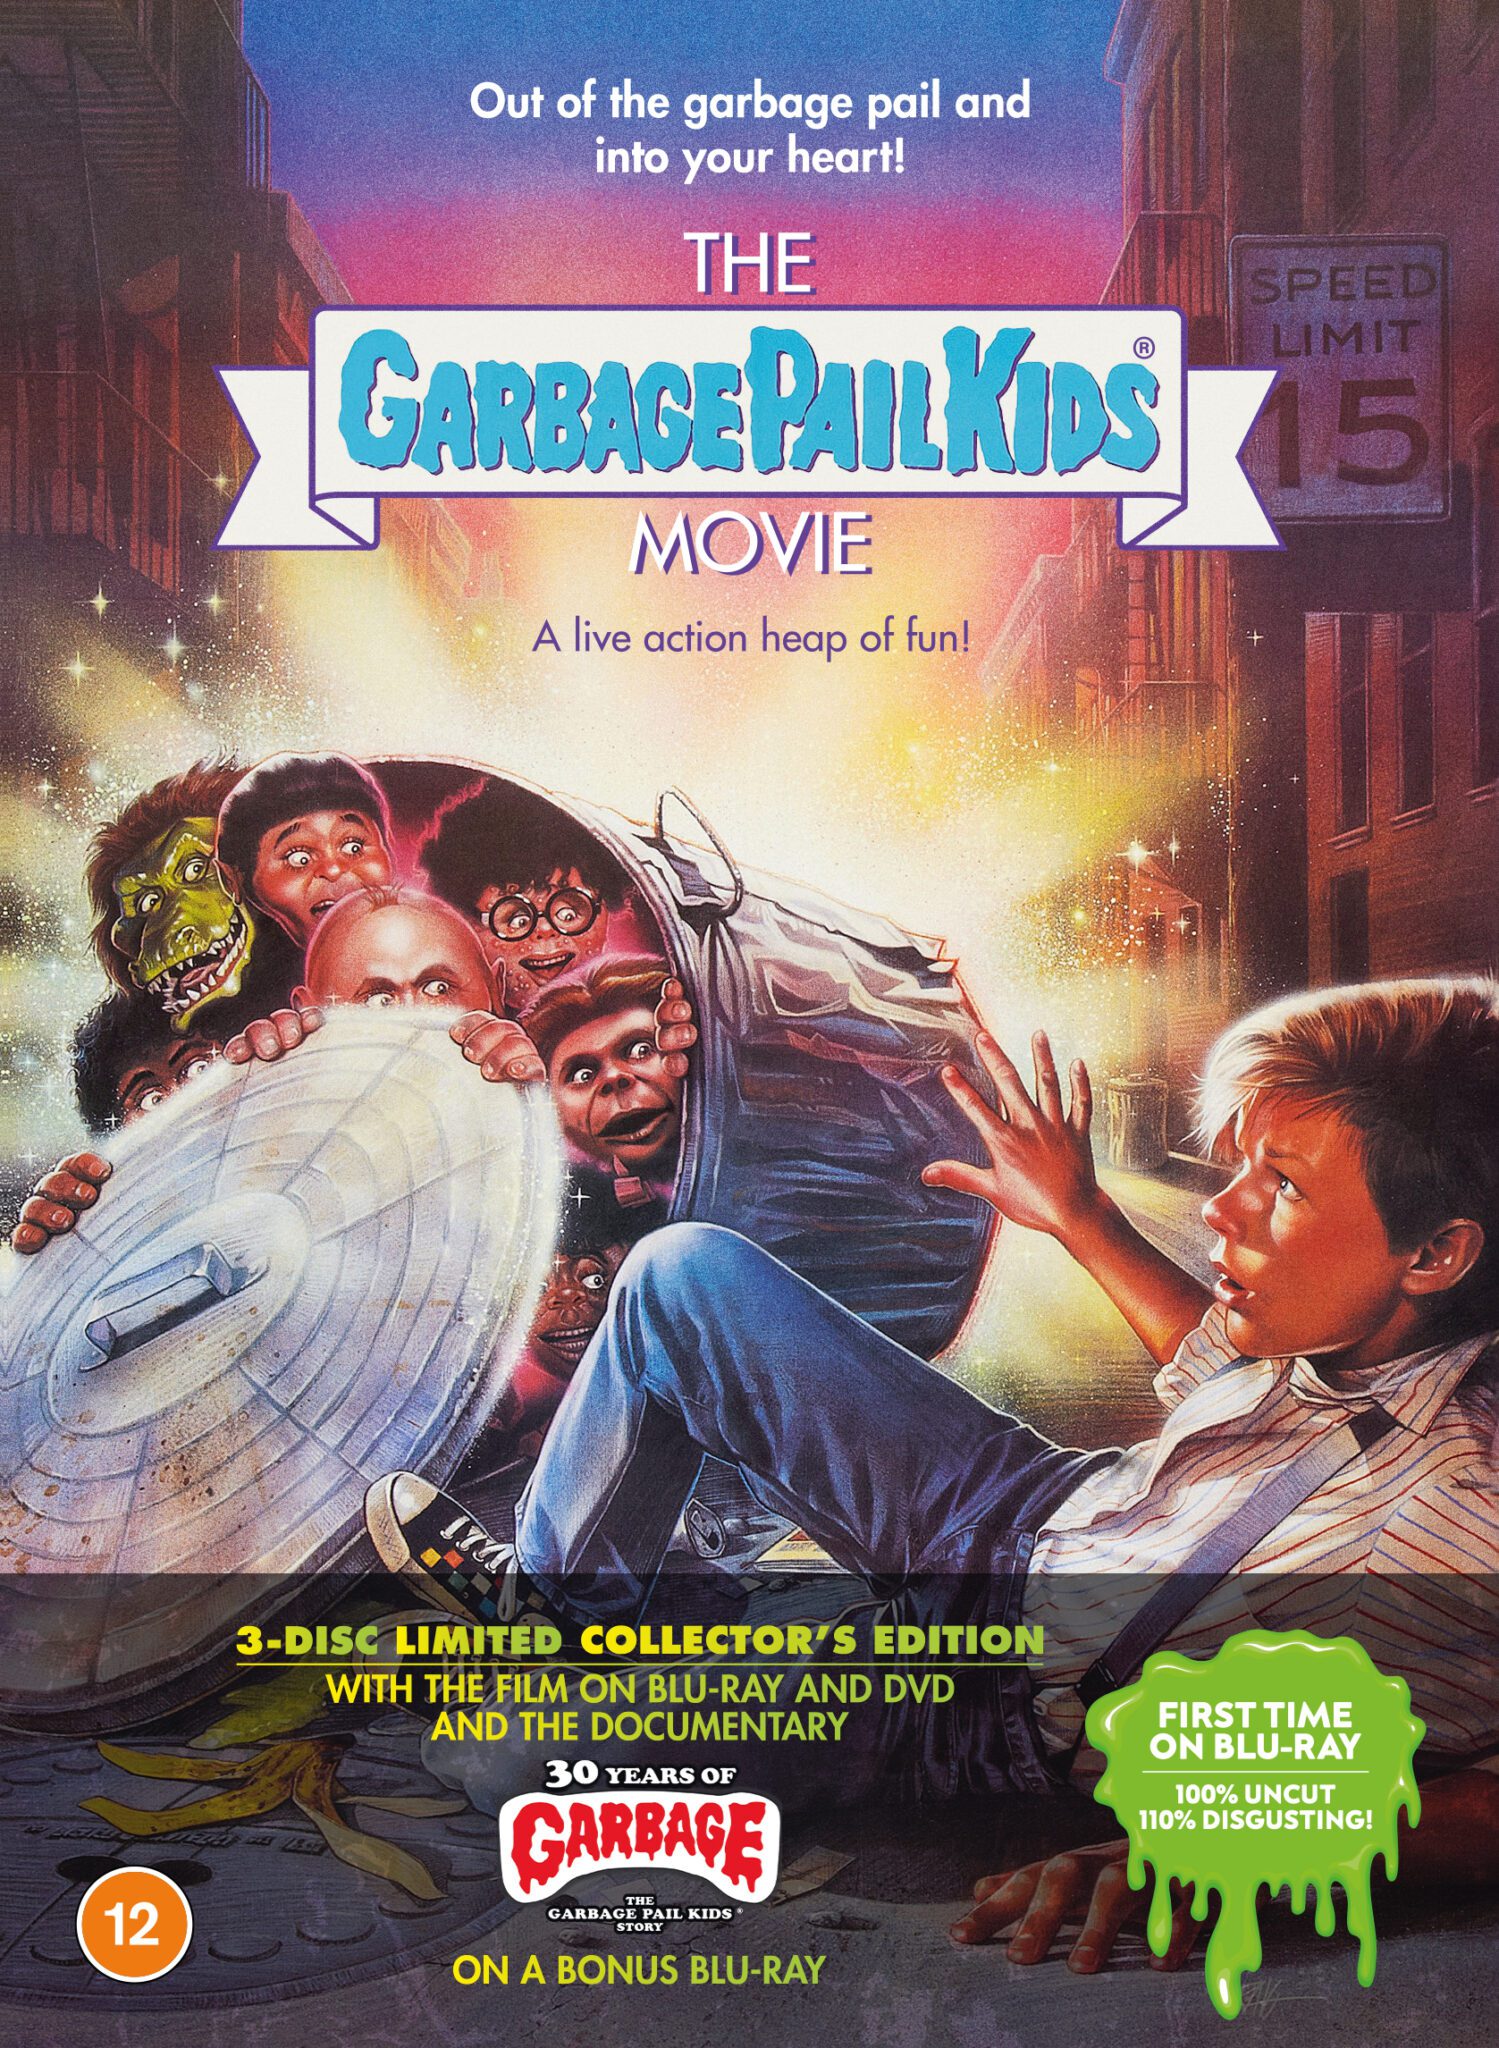 Garbage Pail Kids - Press Release - Moviehooker